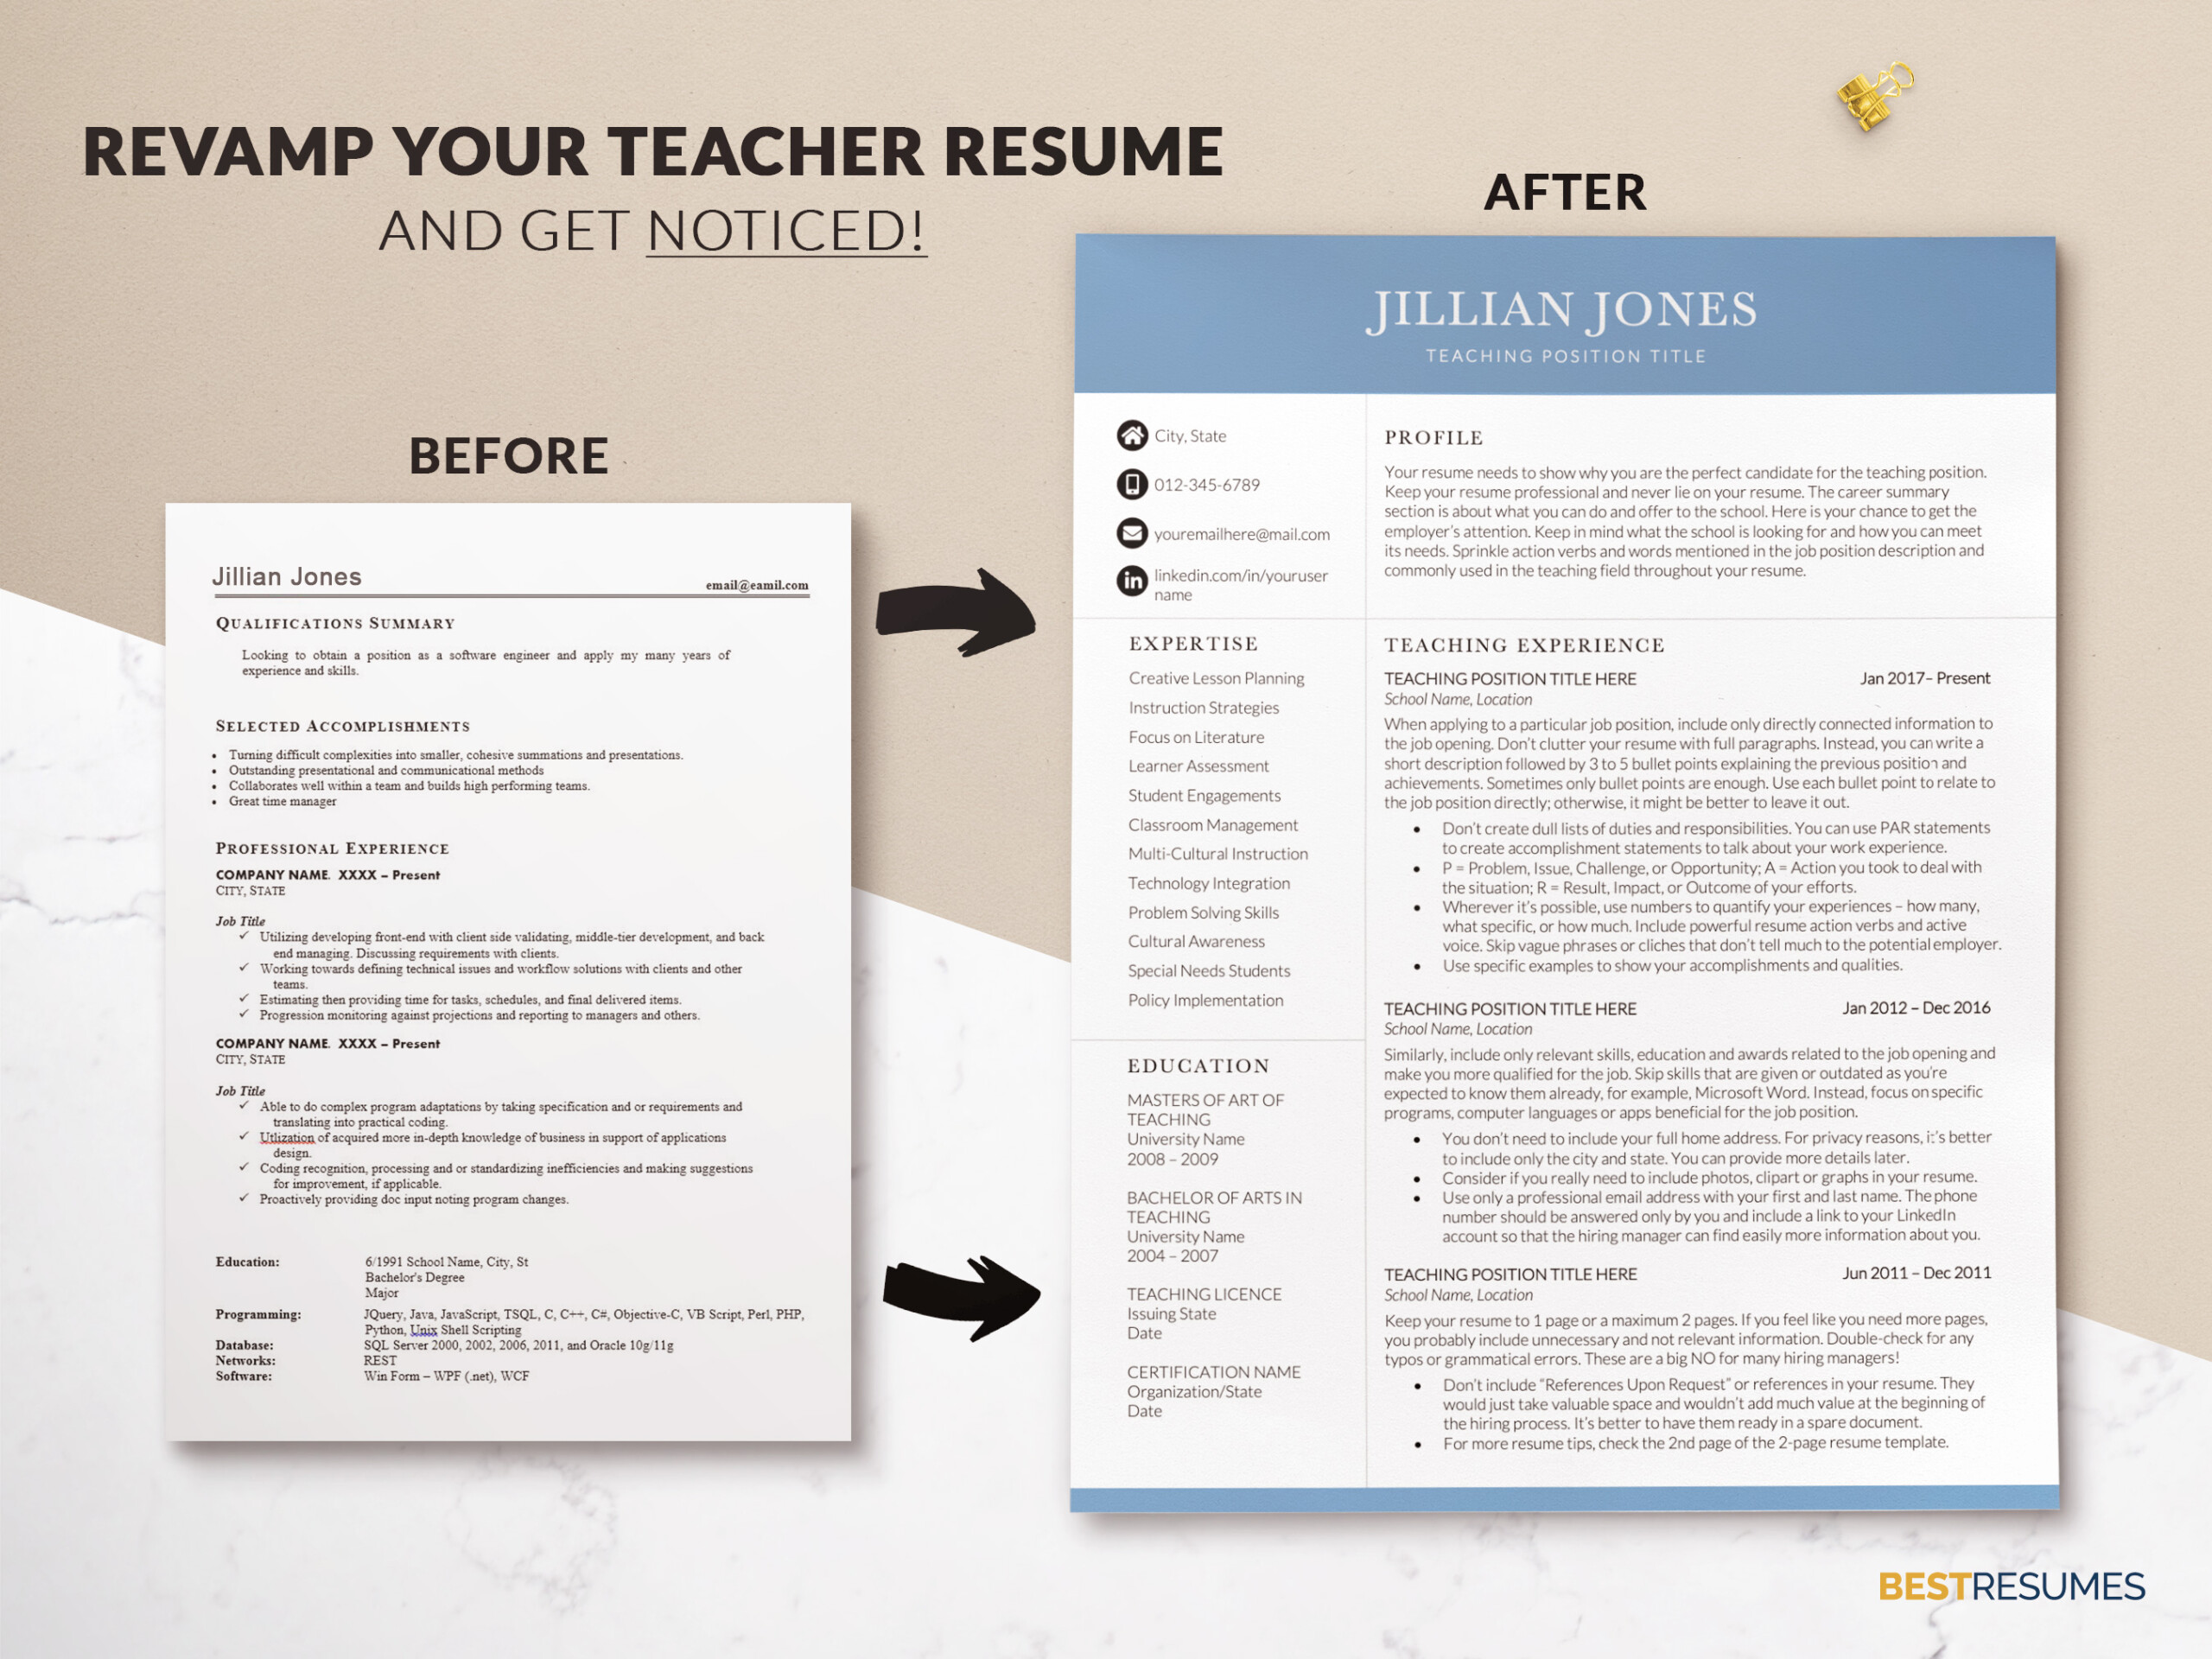 Experienced Teachering Resume Template and Cover Letter Revamp Teacher Resume Jillian Jones